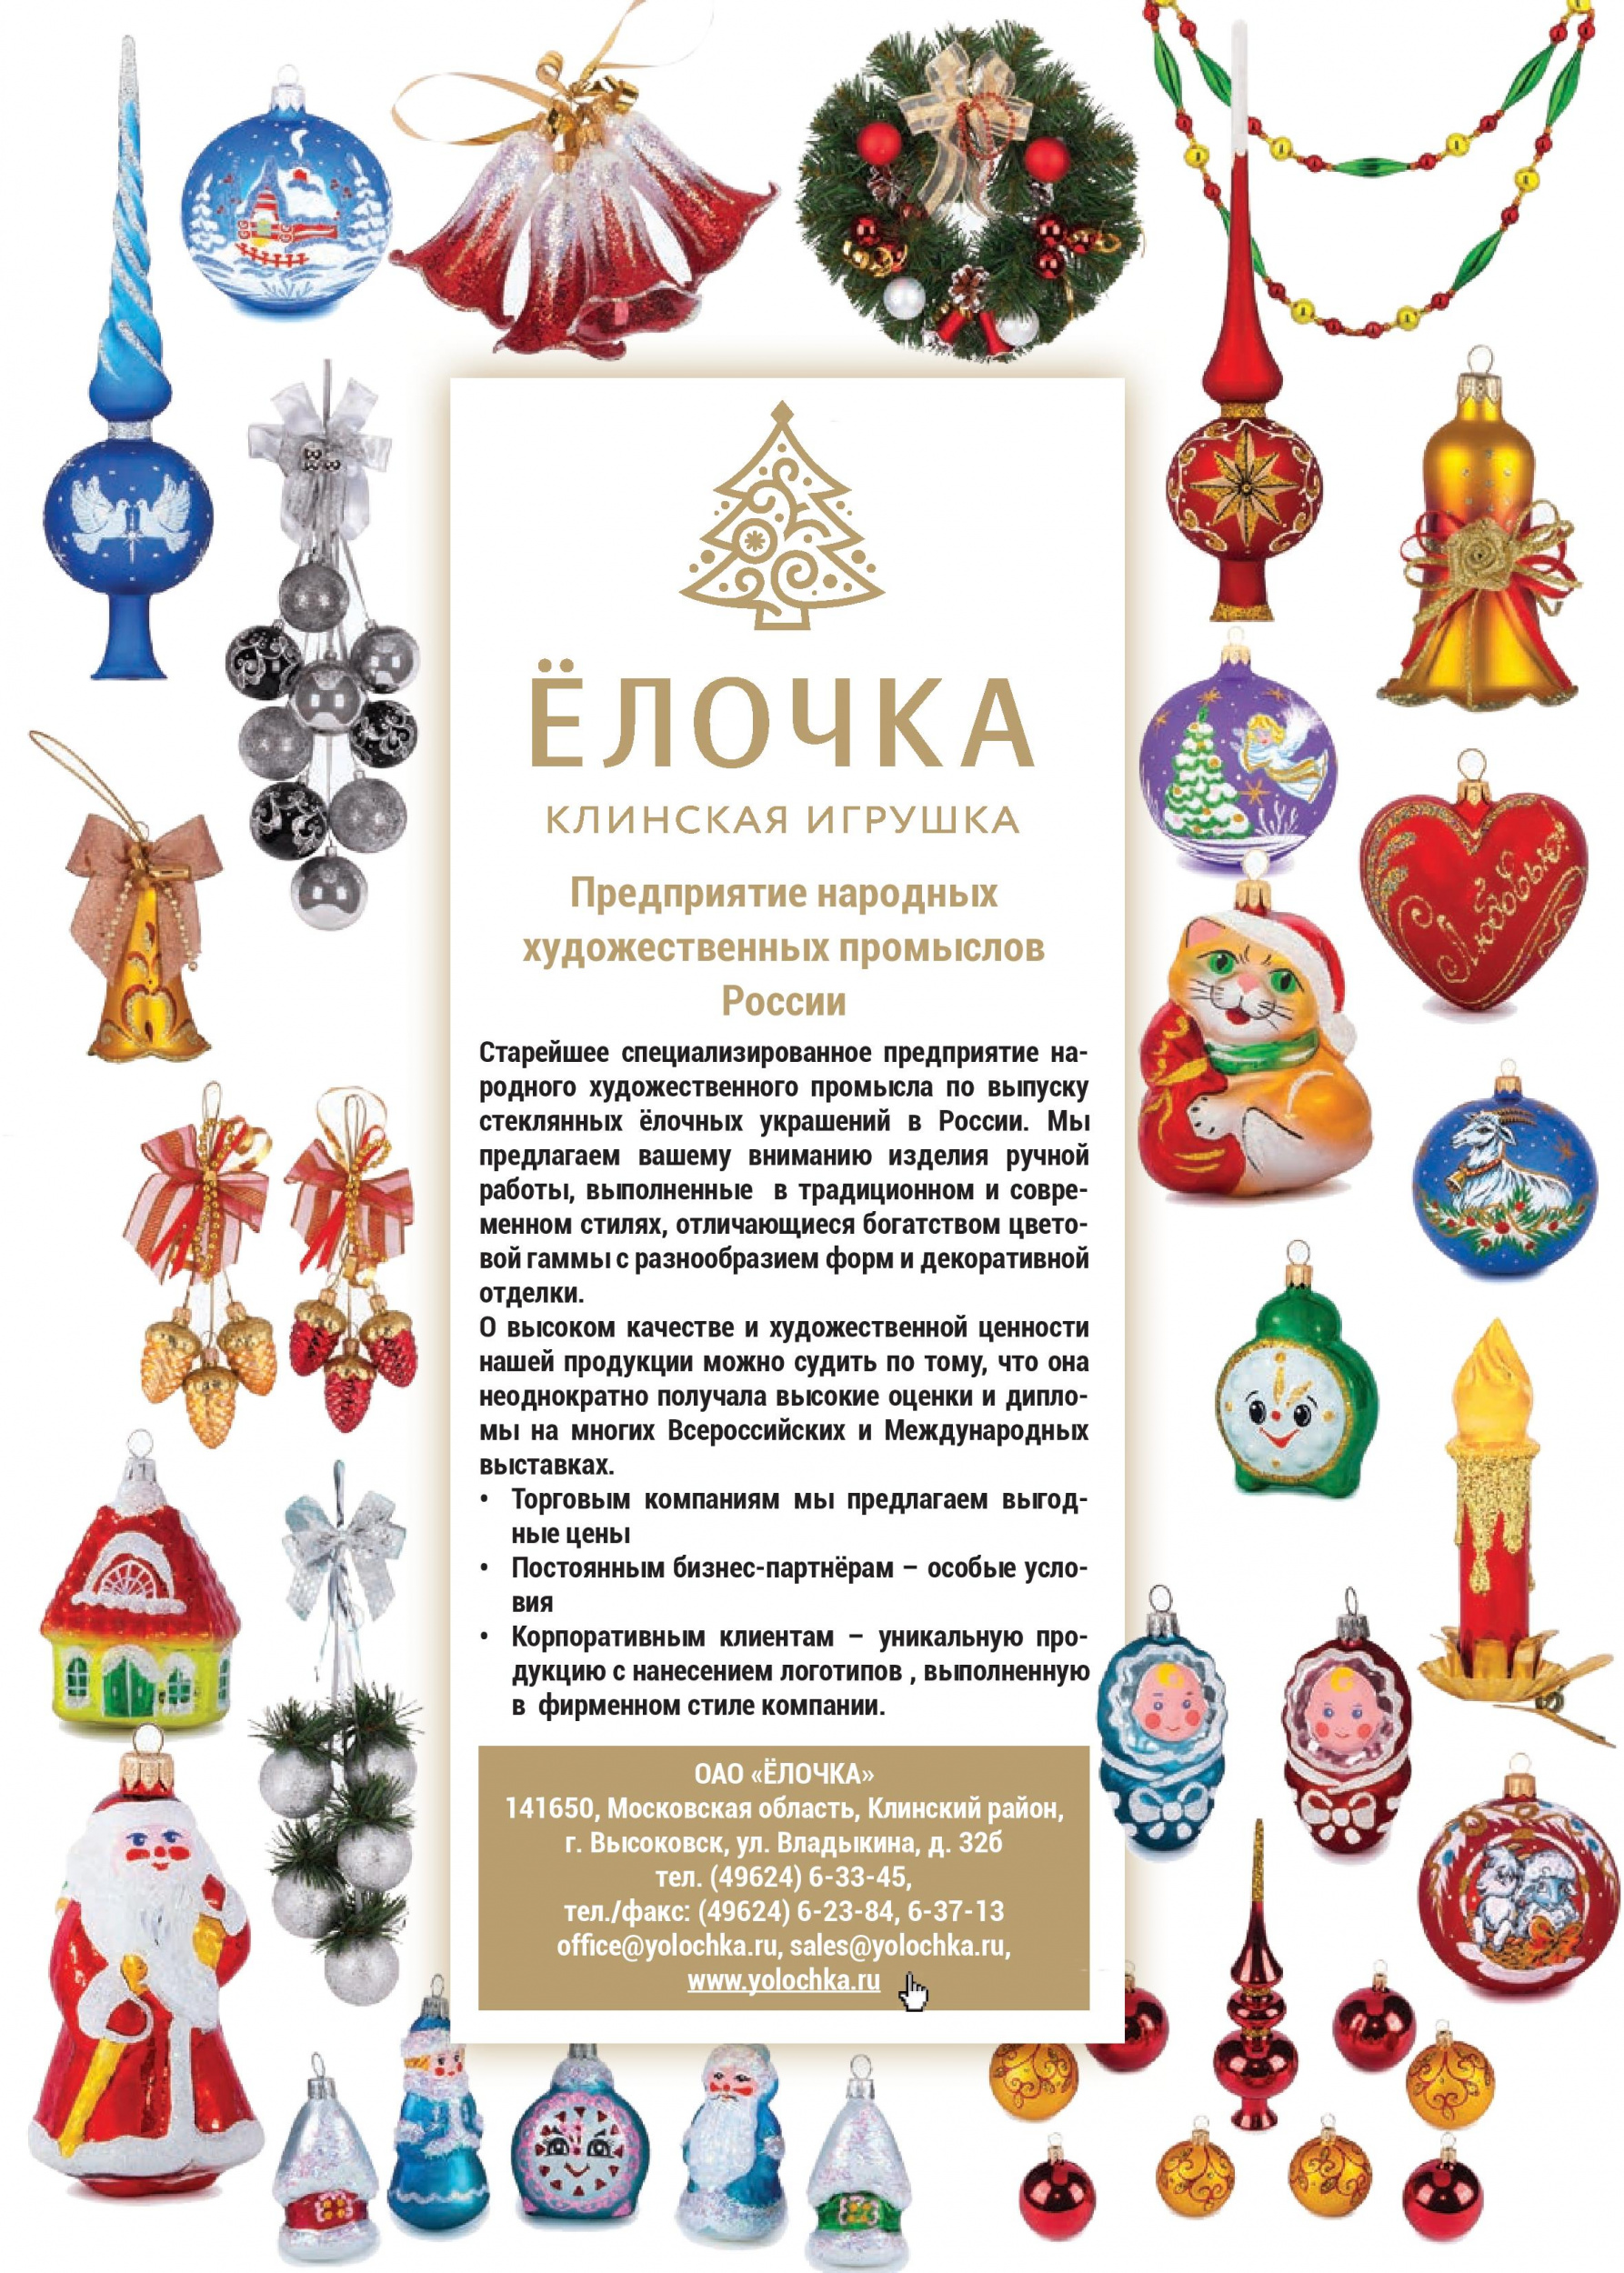 Предприятие народных художественных промыслов России